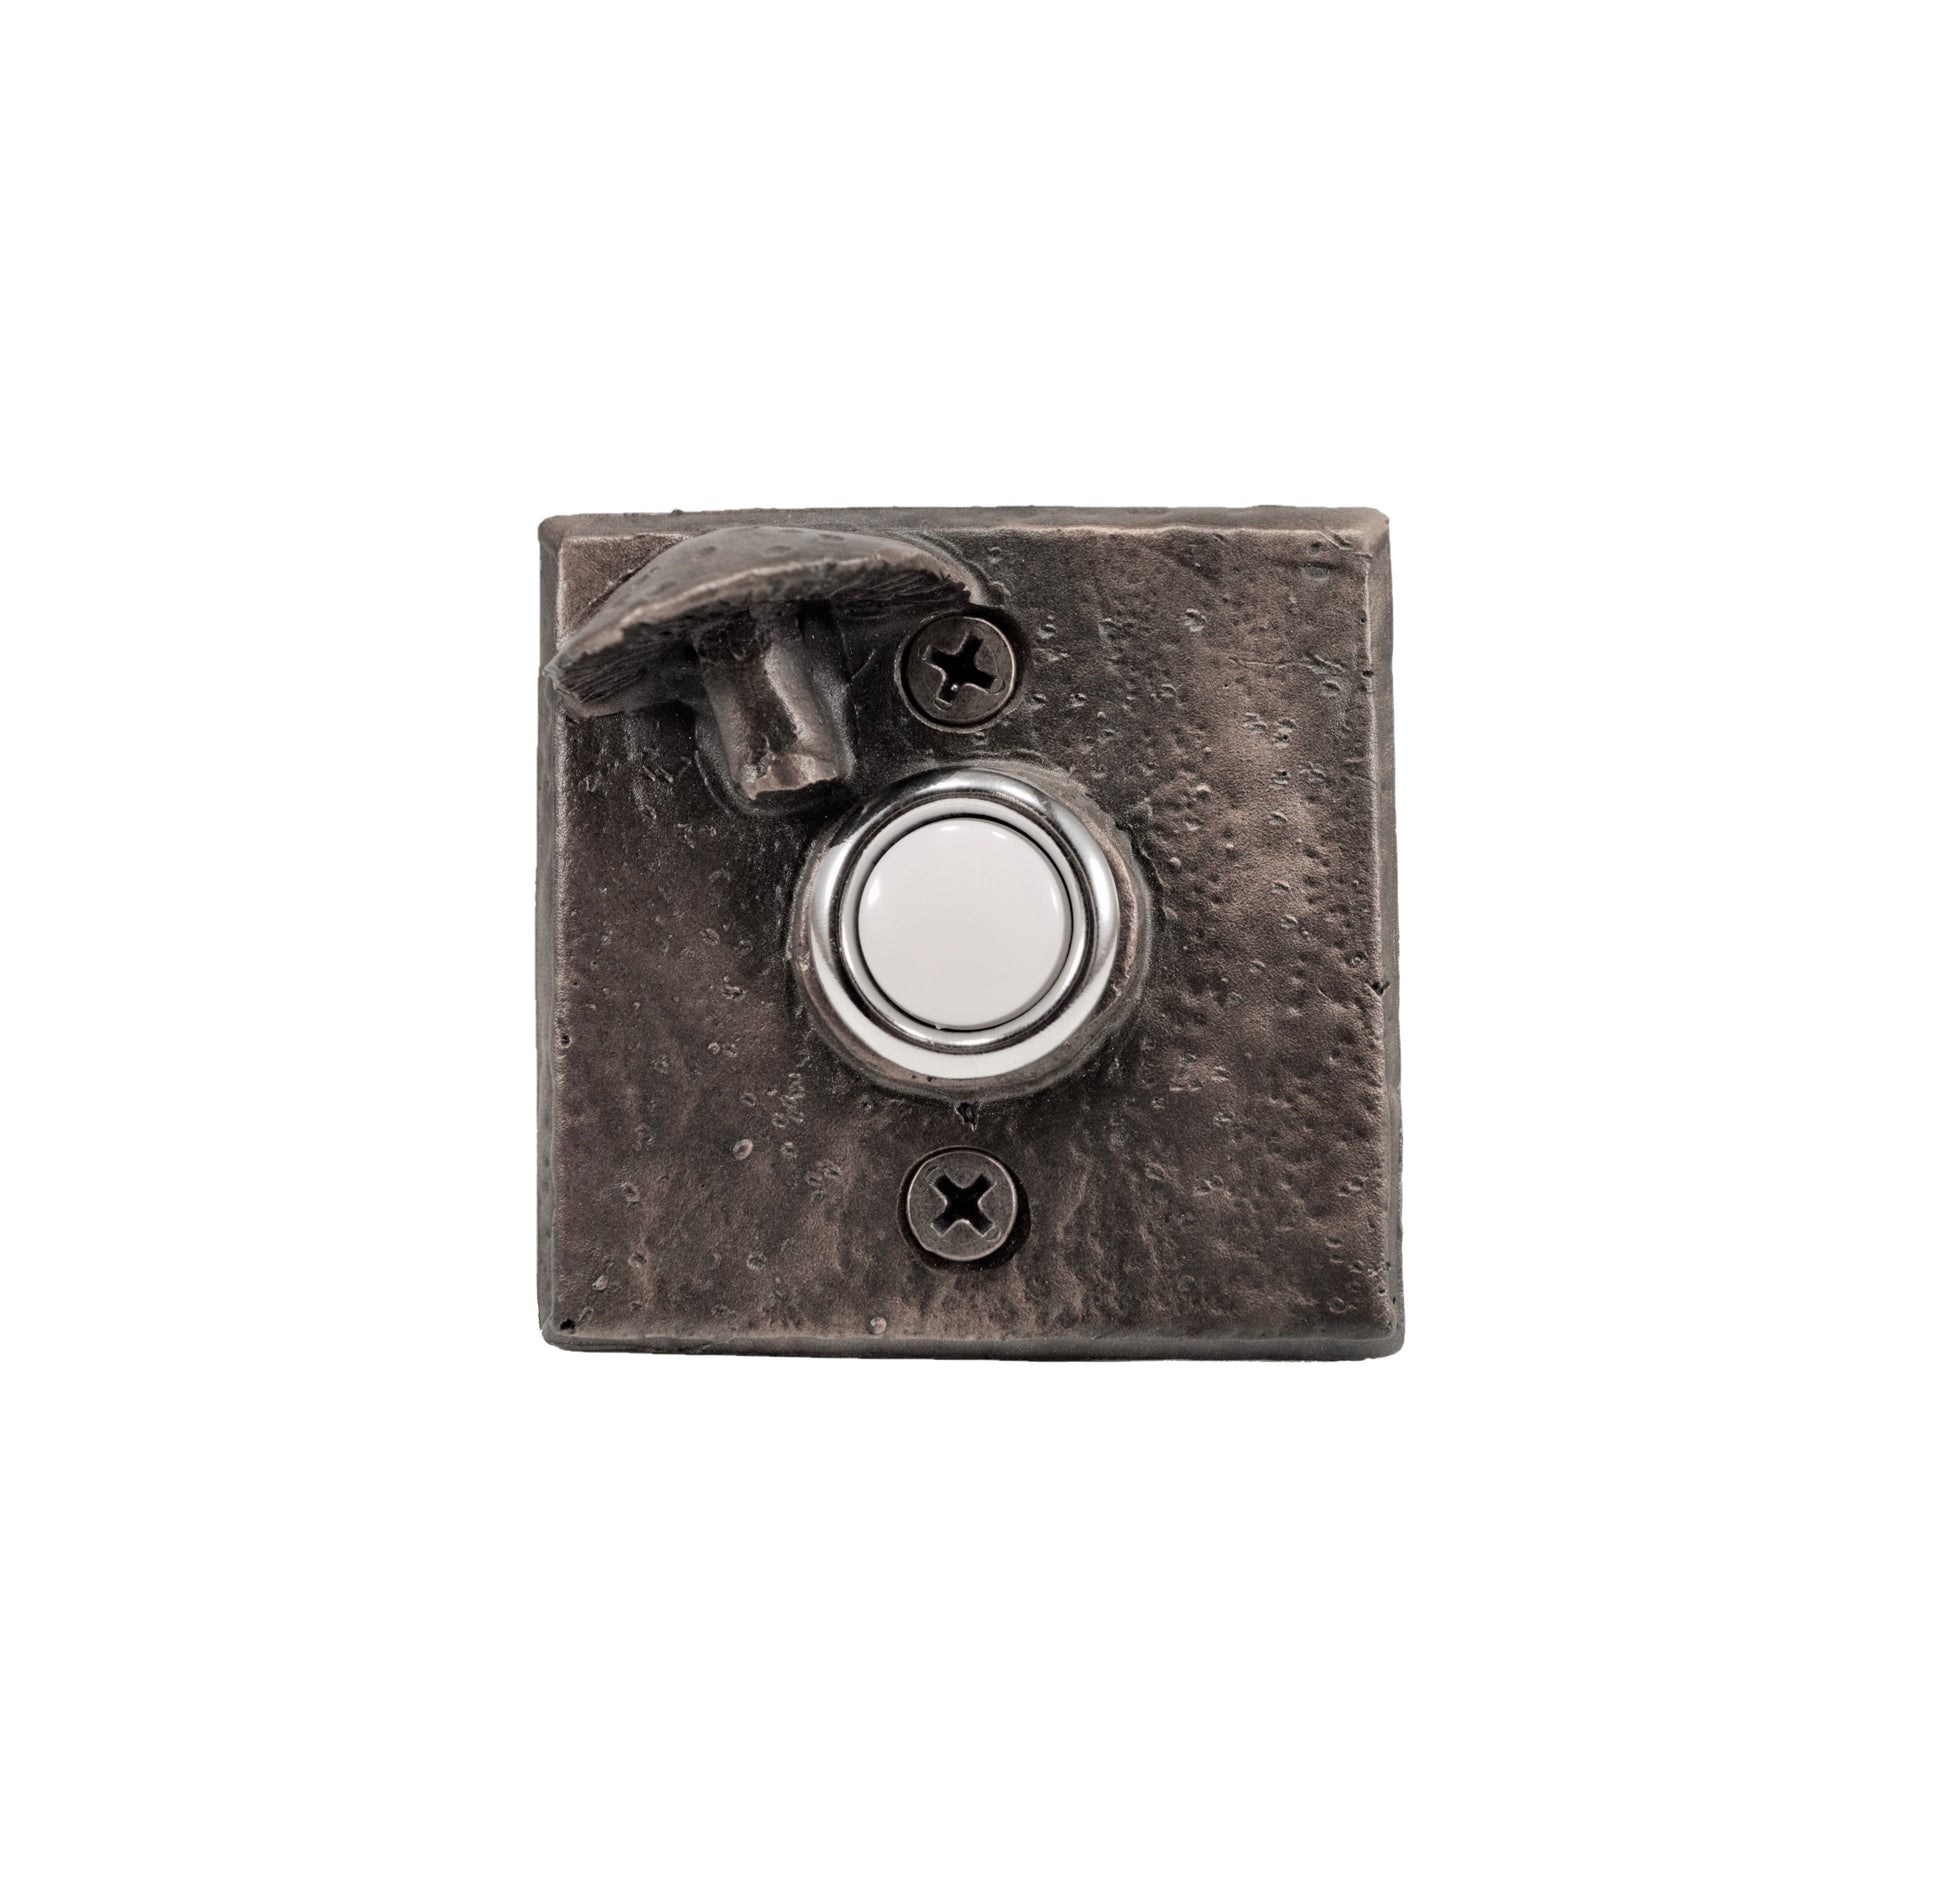 Square bronze doorbell with toadstool mushroom